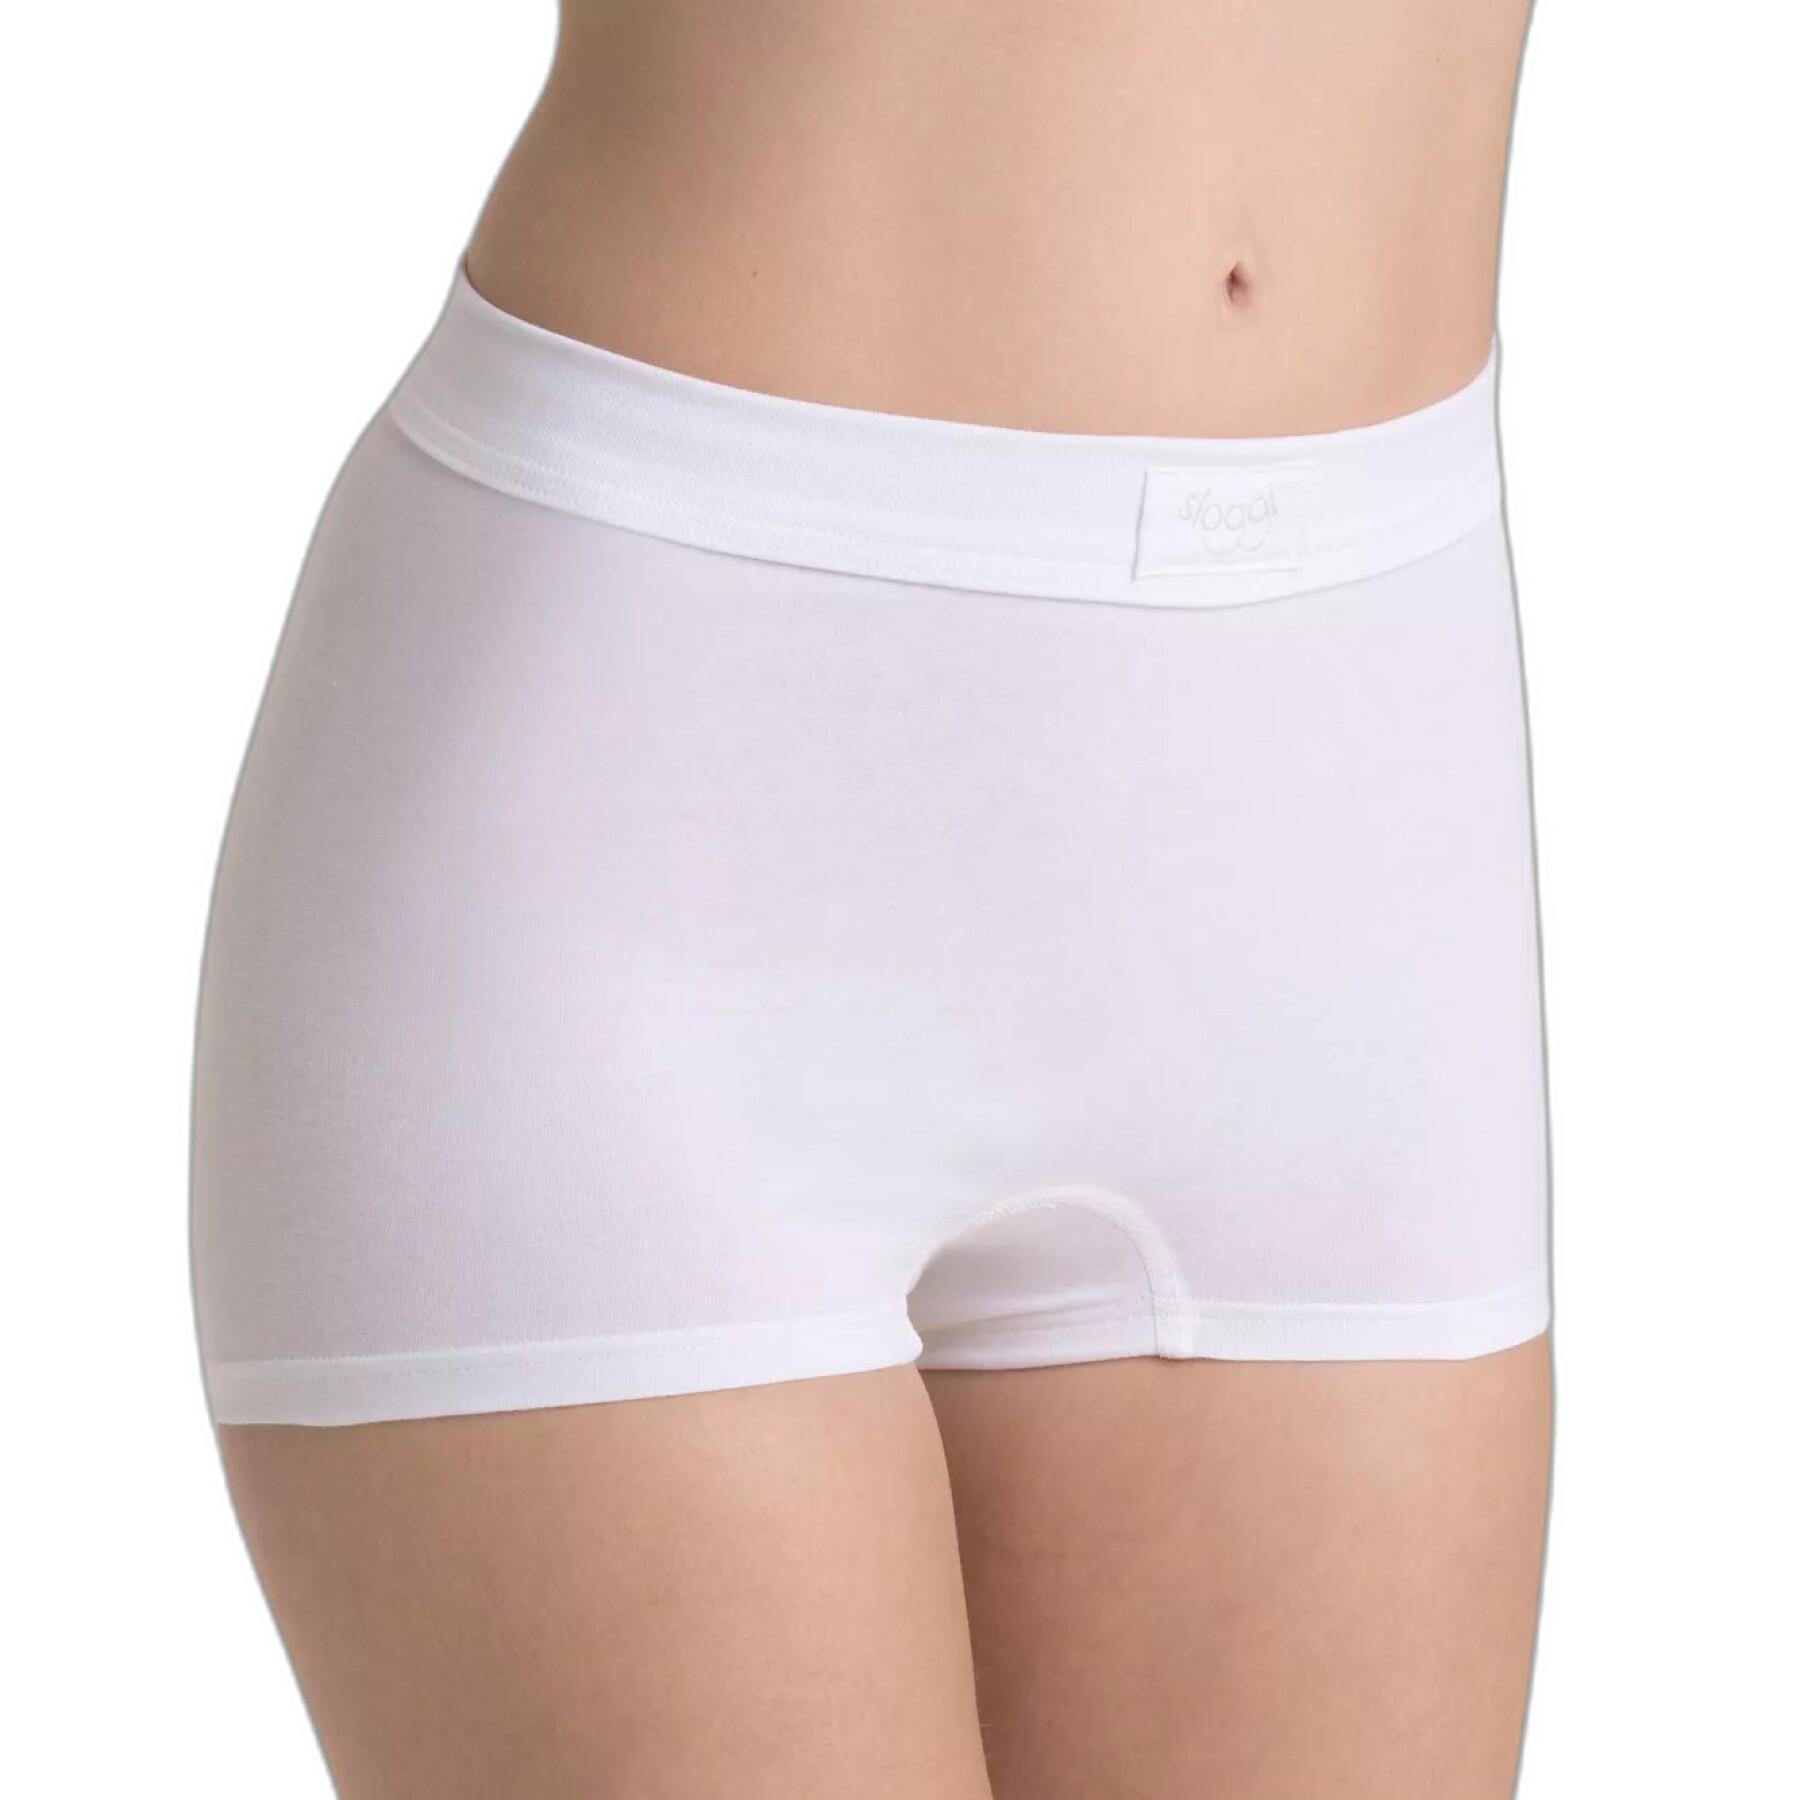 Women's panties Sloggi Double Comfort